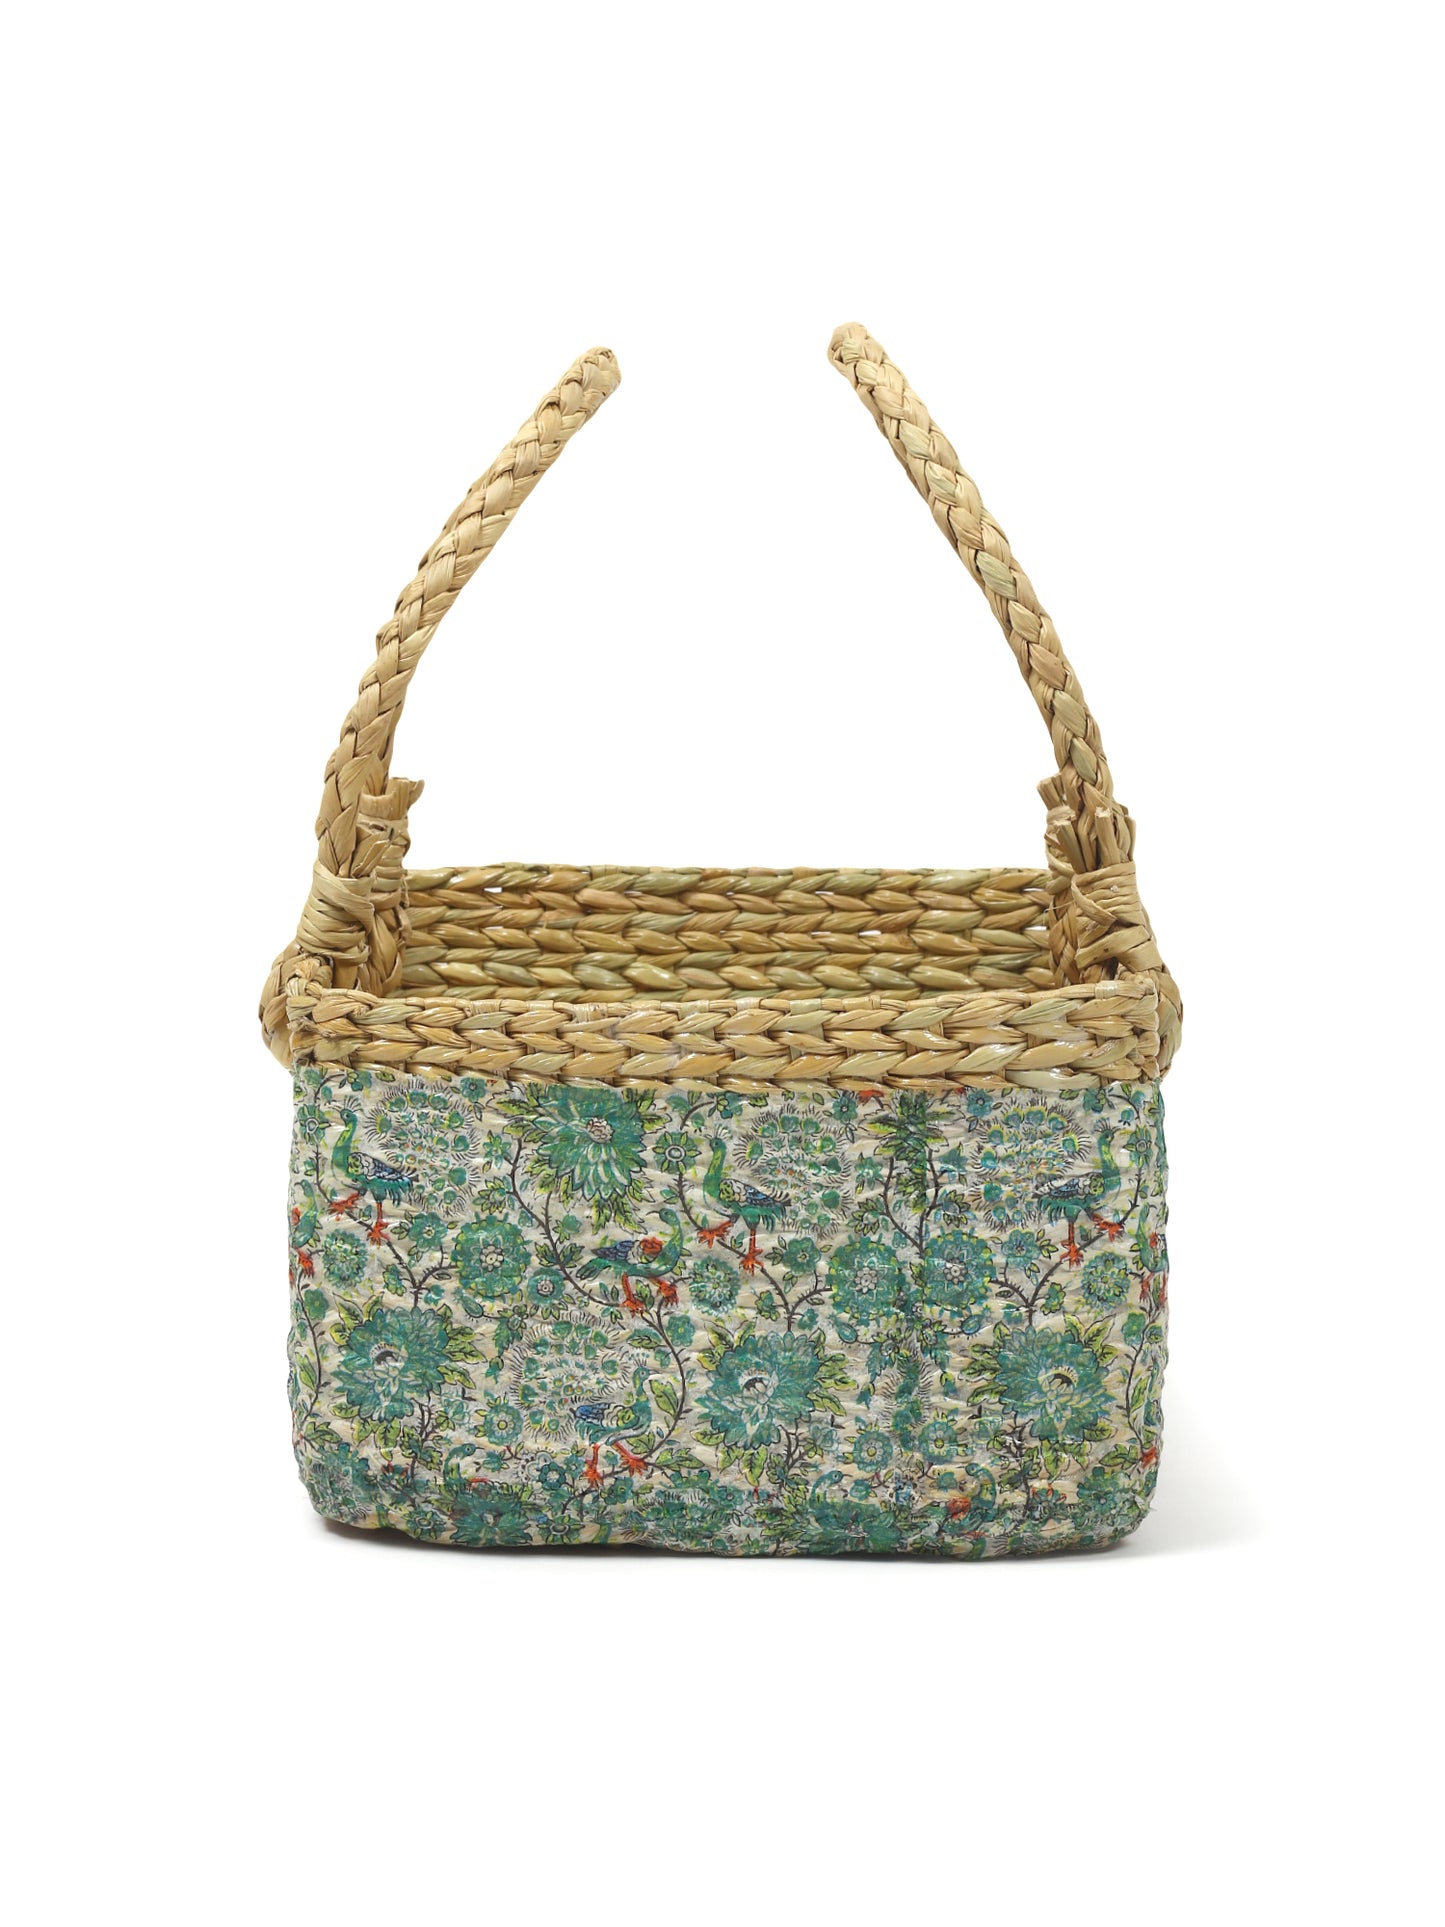 Seagrass Hamper Basket | Fruit Basket